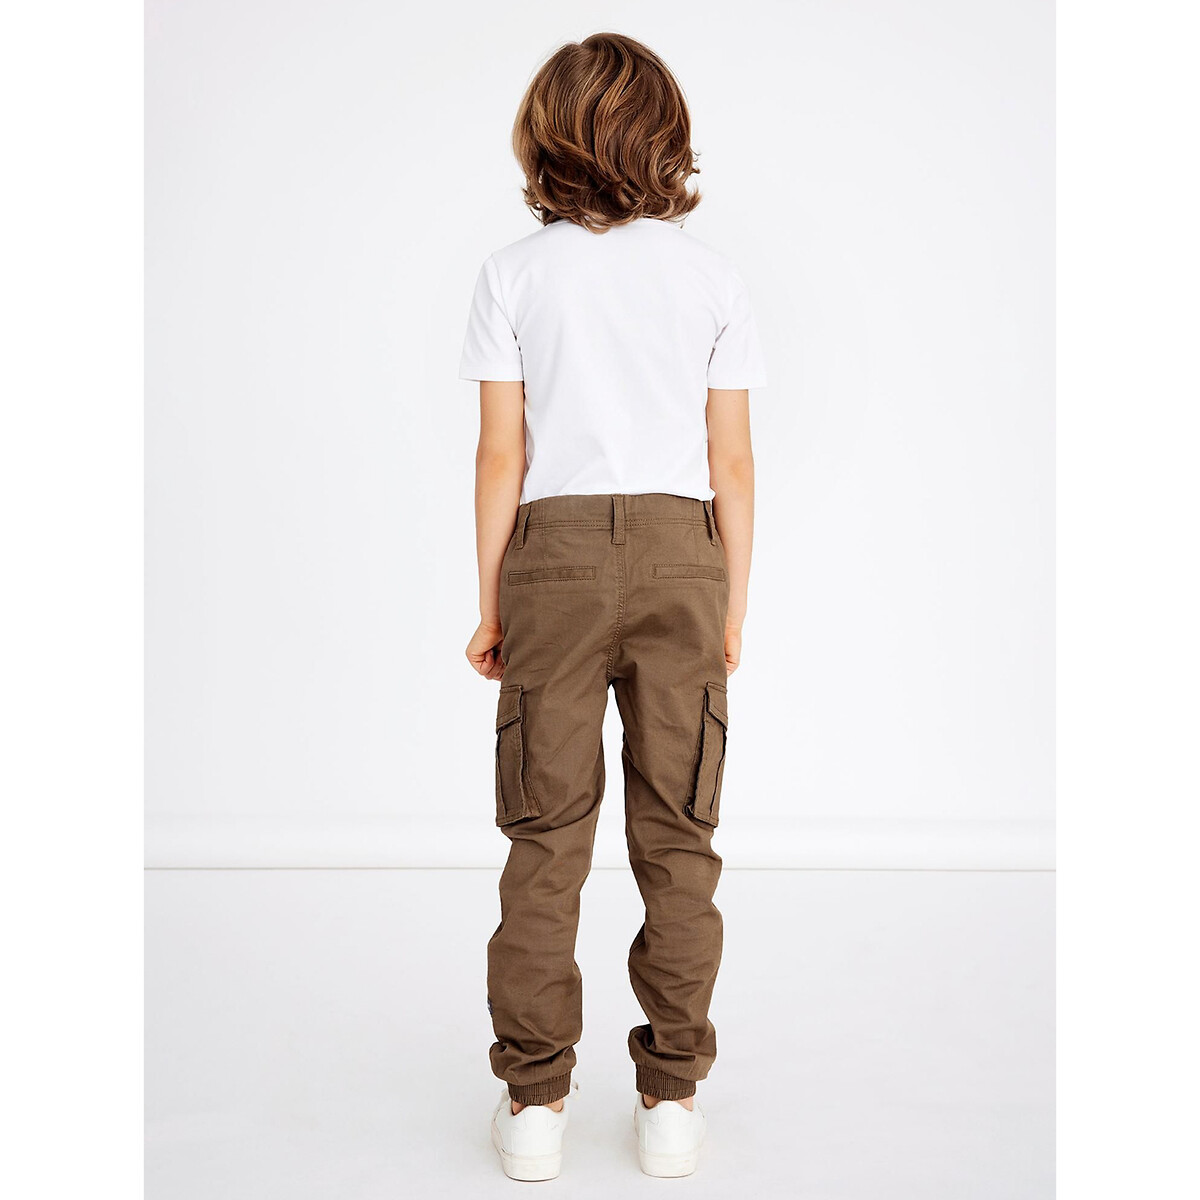 Enfants Filles Pantalons & shorts Autres Name It Autres Name it 98/104 